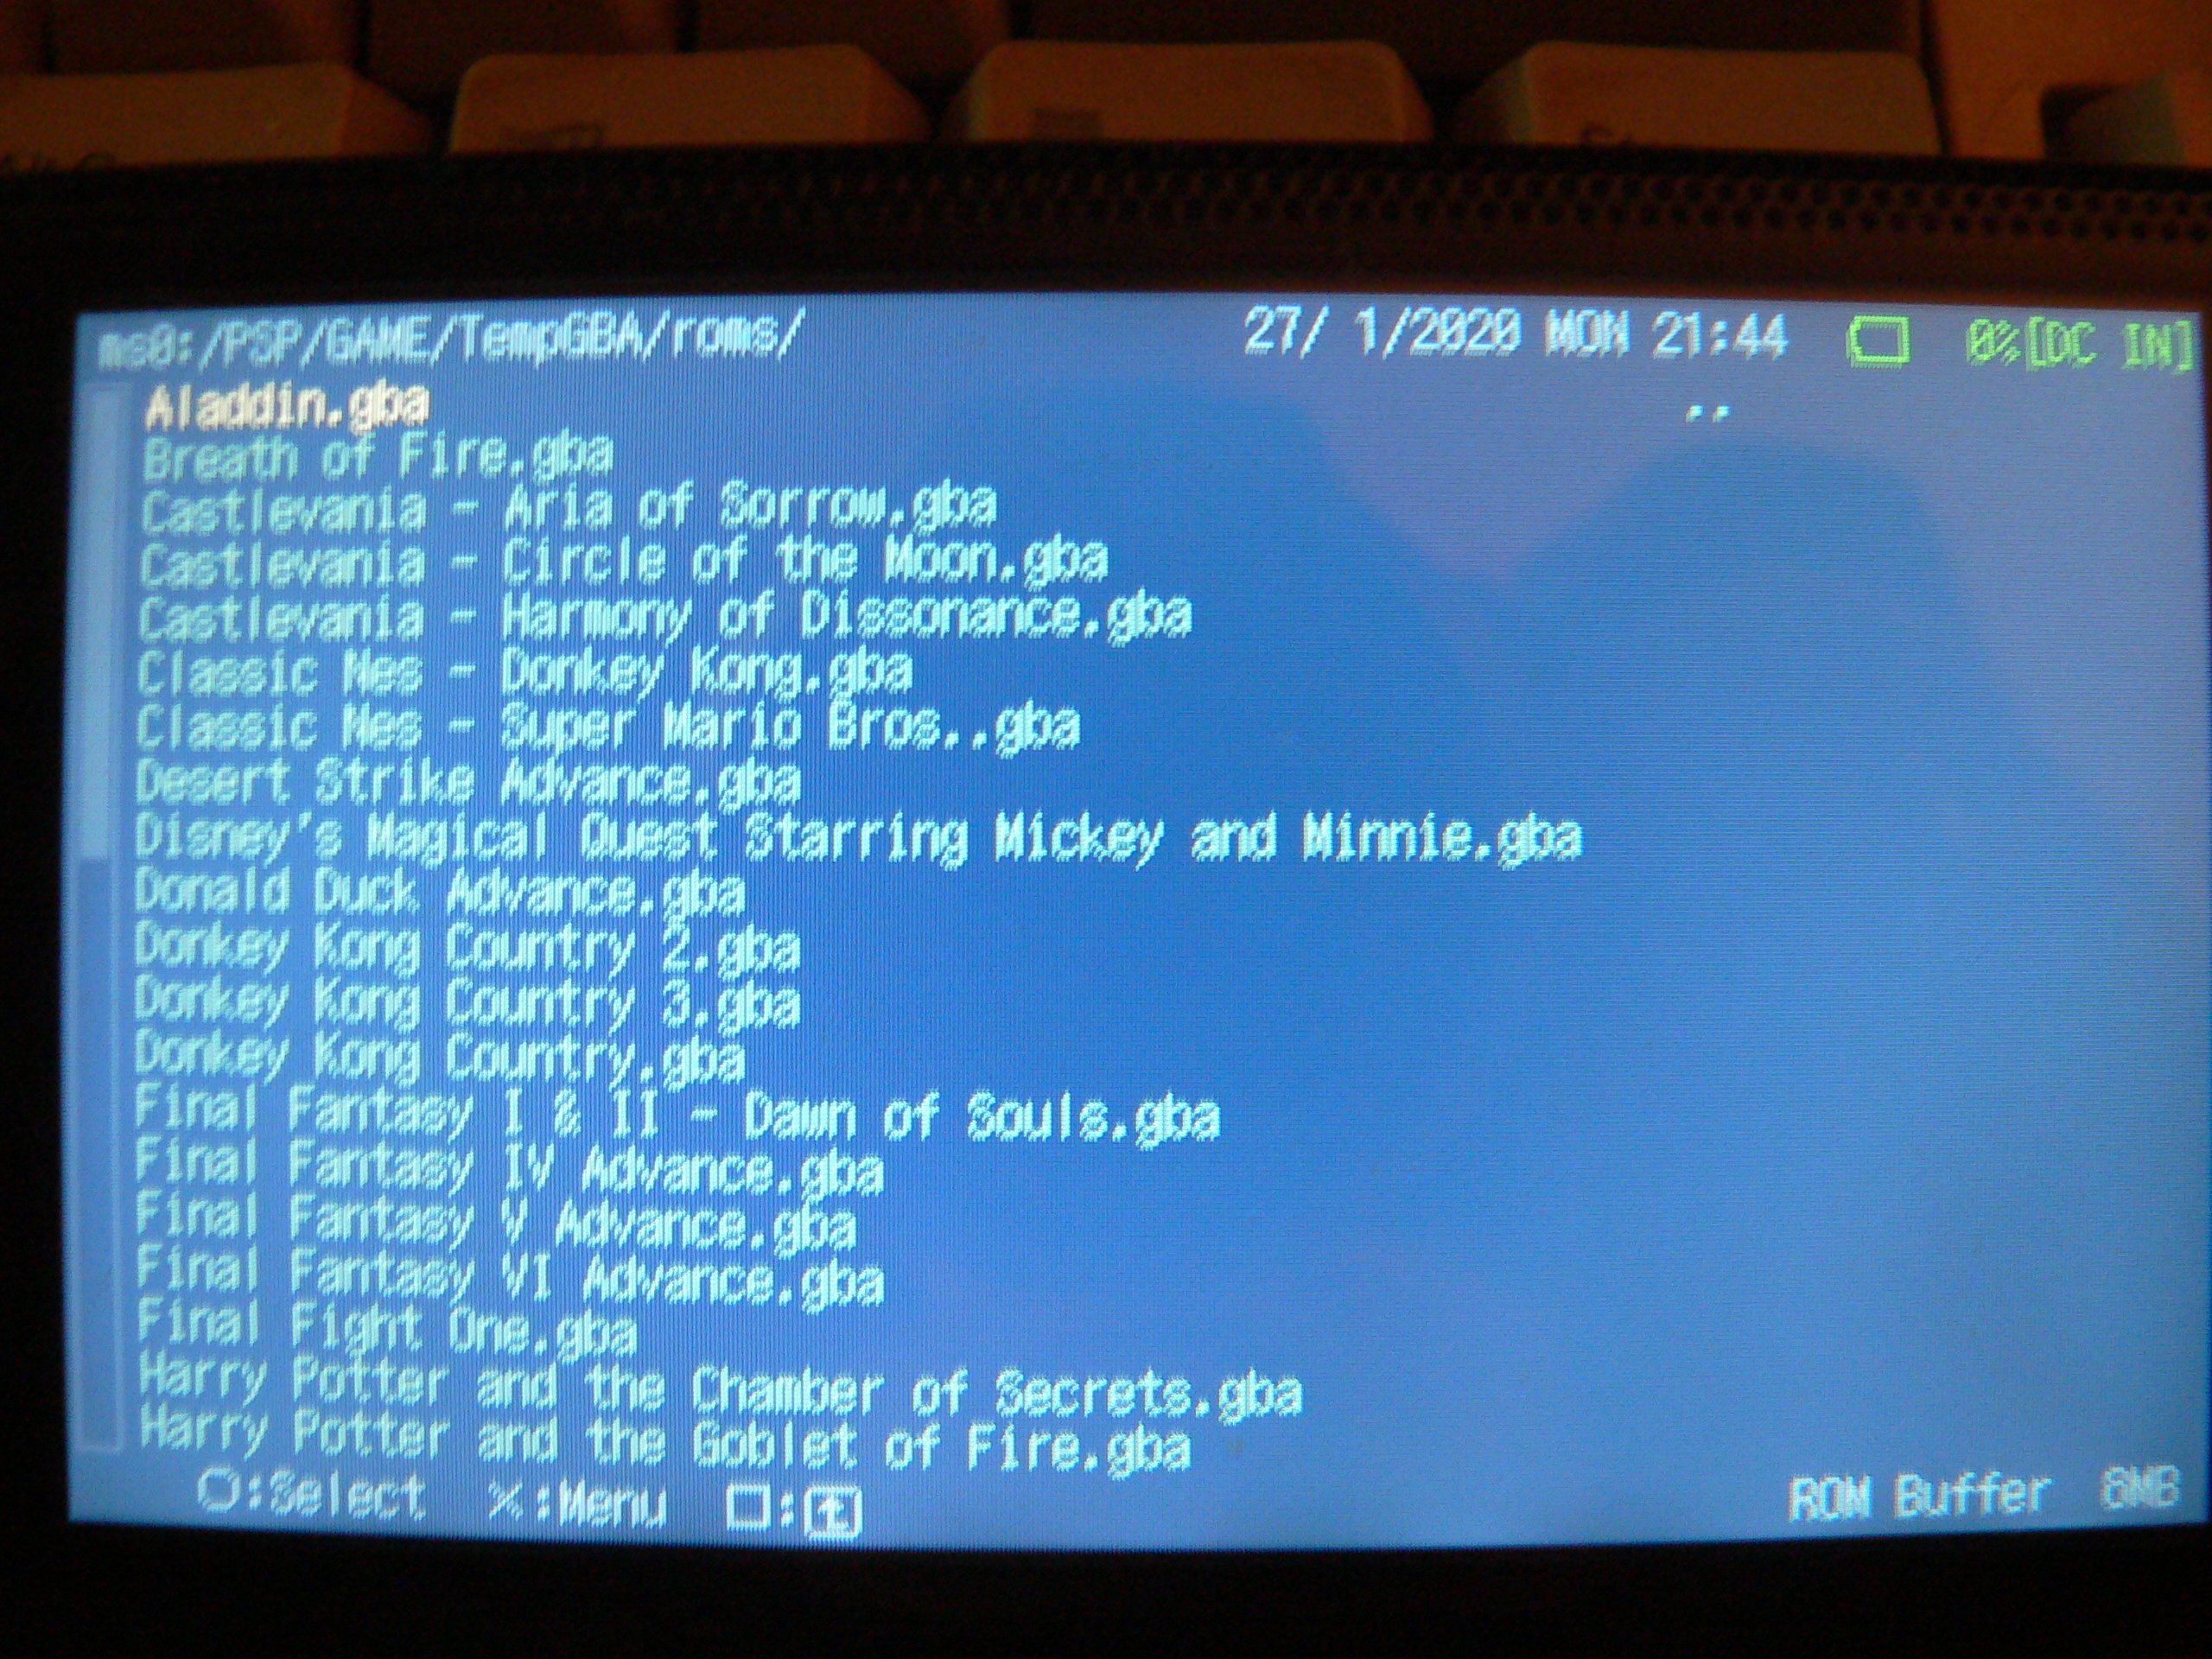 PSP/PS Vita release: GBA emulator UO gpSP Kai v3.4 test 4 build